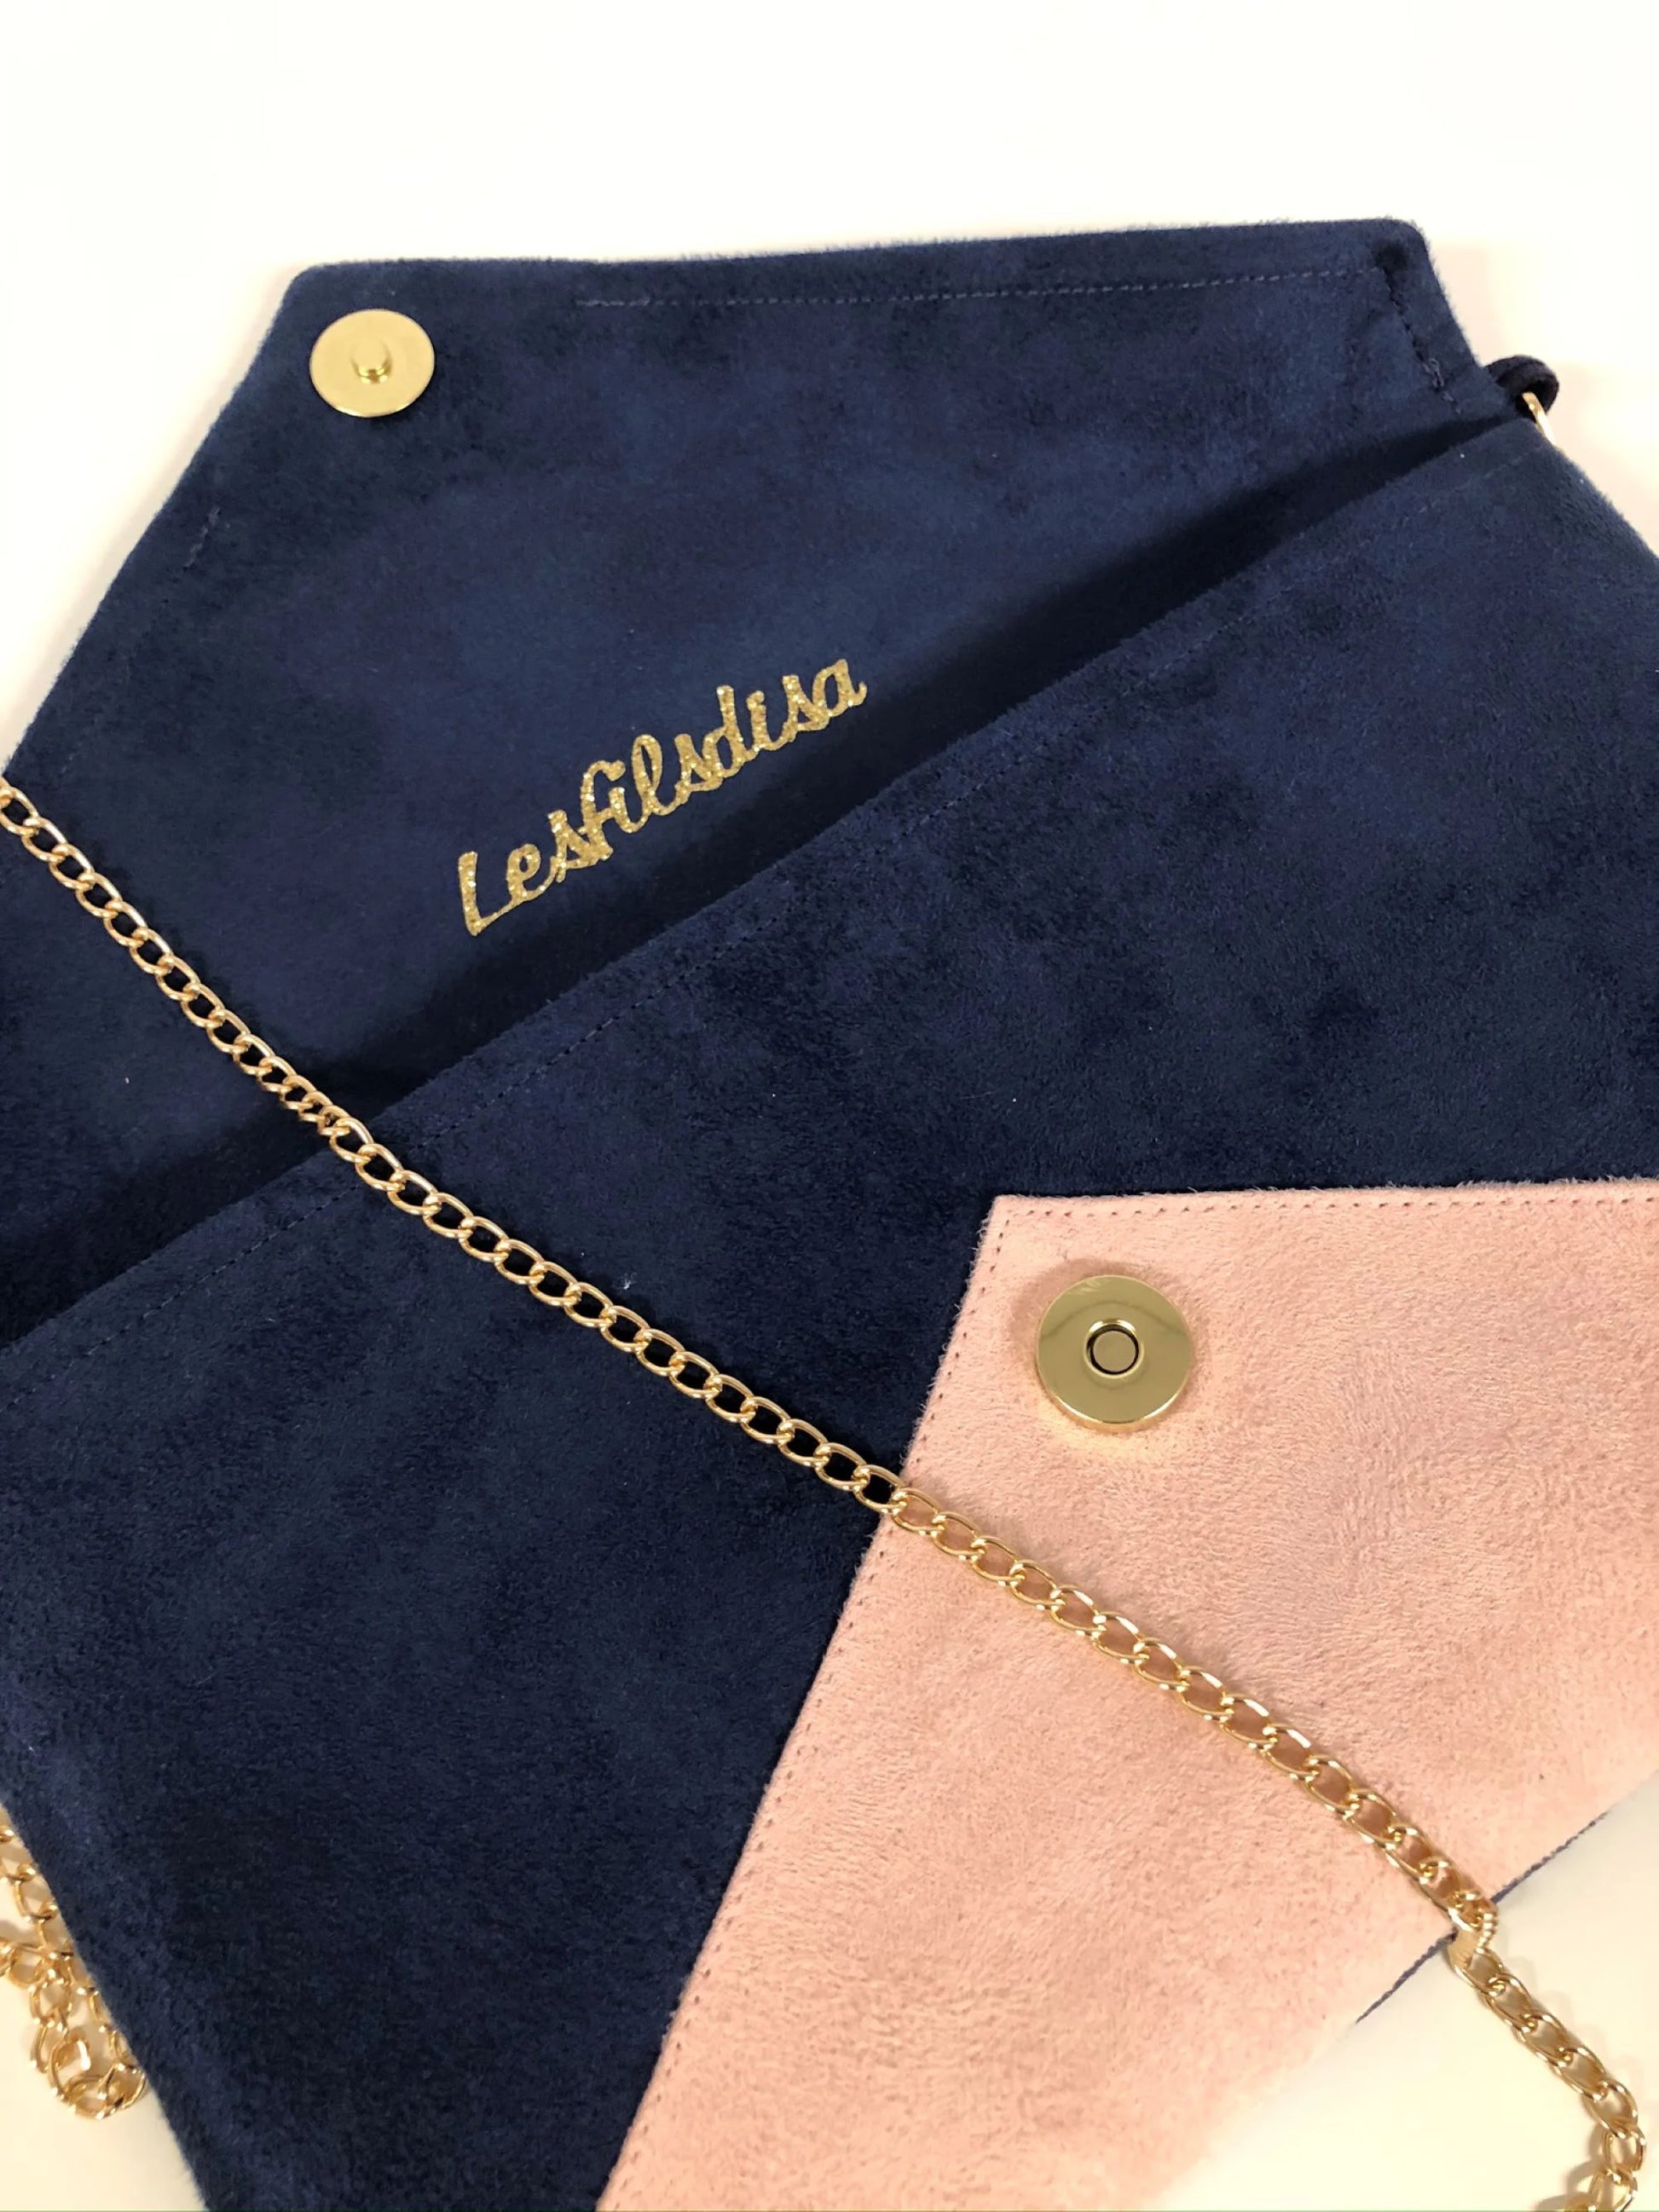 Le sac pochette Isa bleu marine et rose poudré à paillettes dorées, avec chainette amovible, vue intérieure.